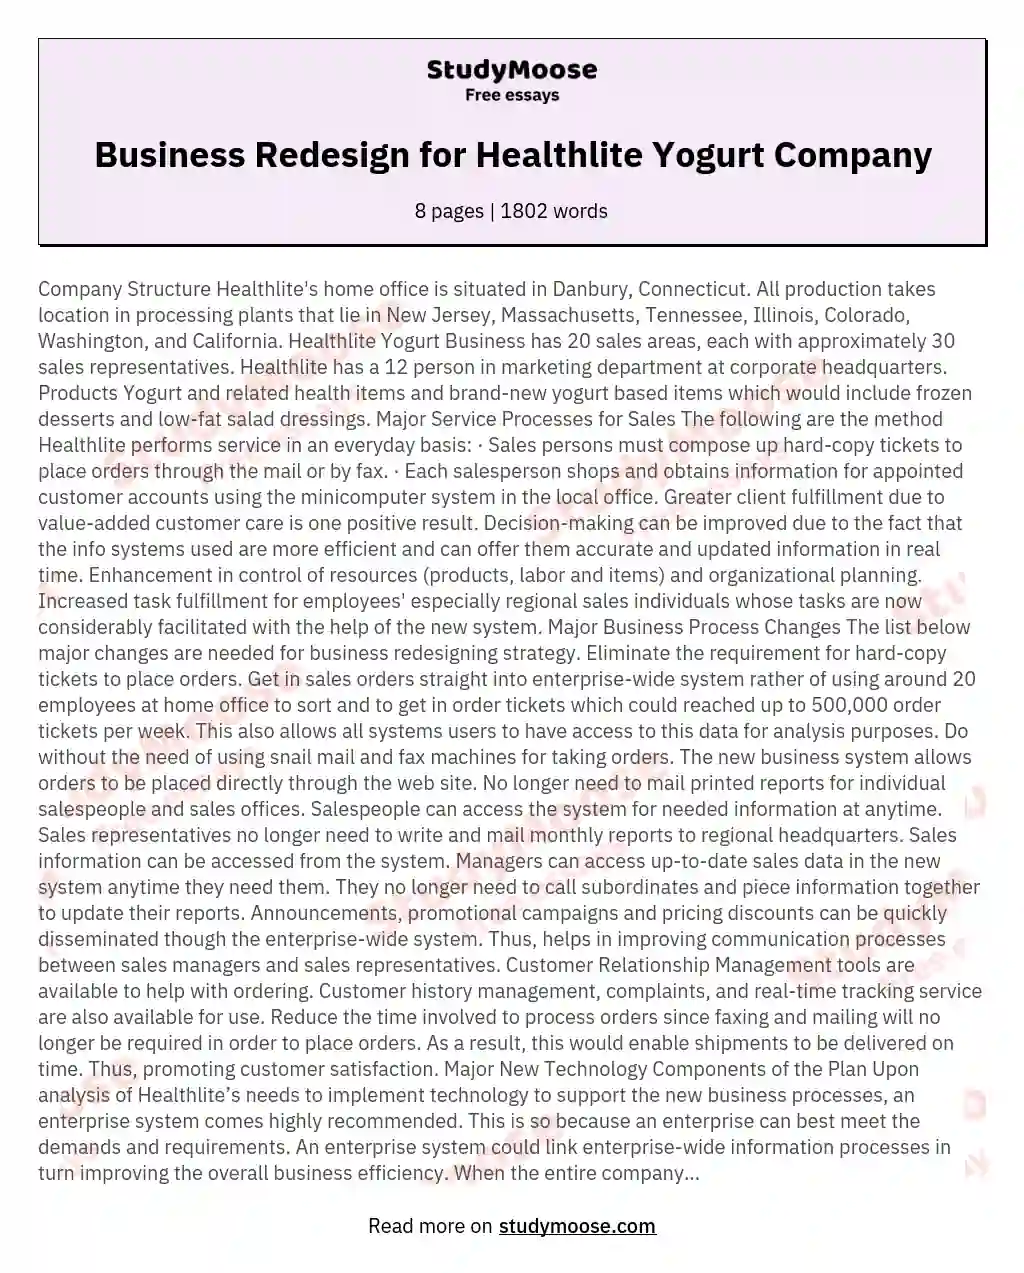 Business Redesign for Healthlite Yogurt Company essay